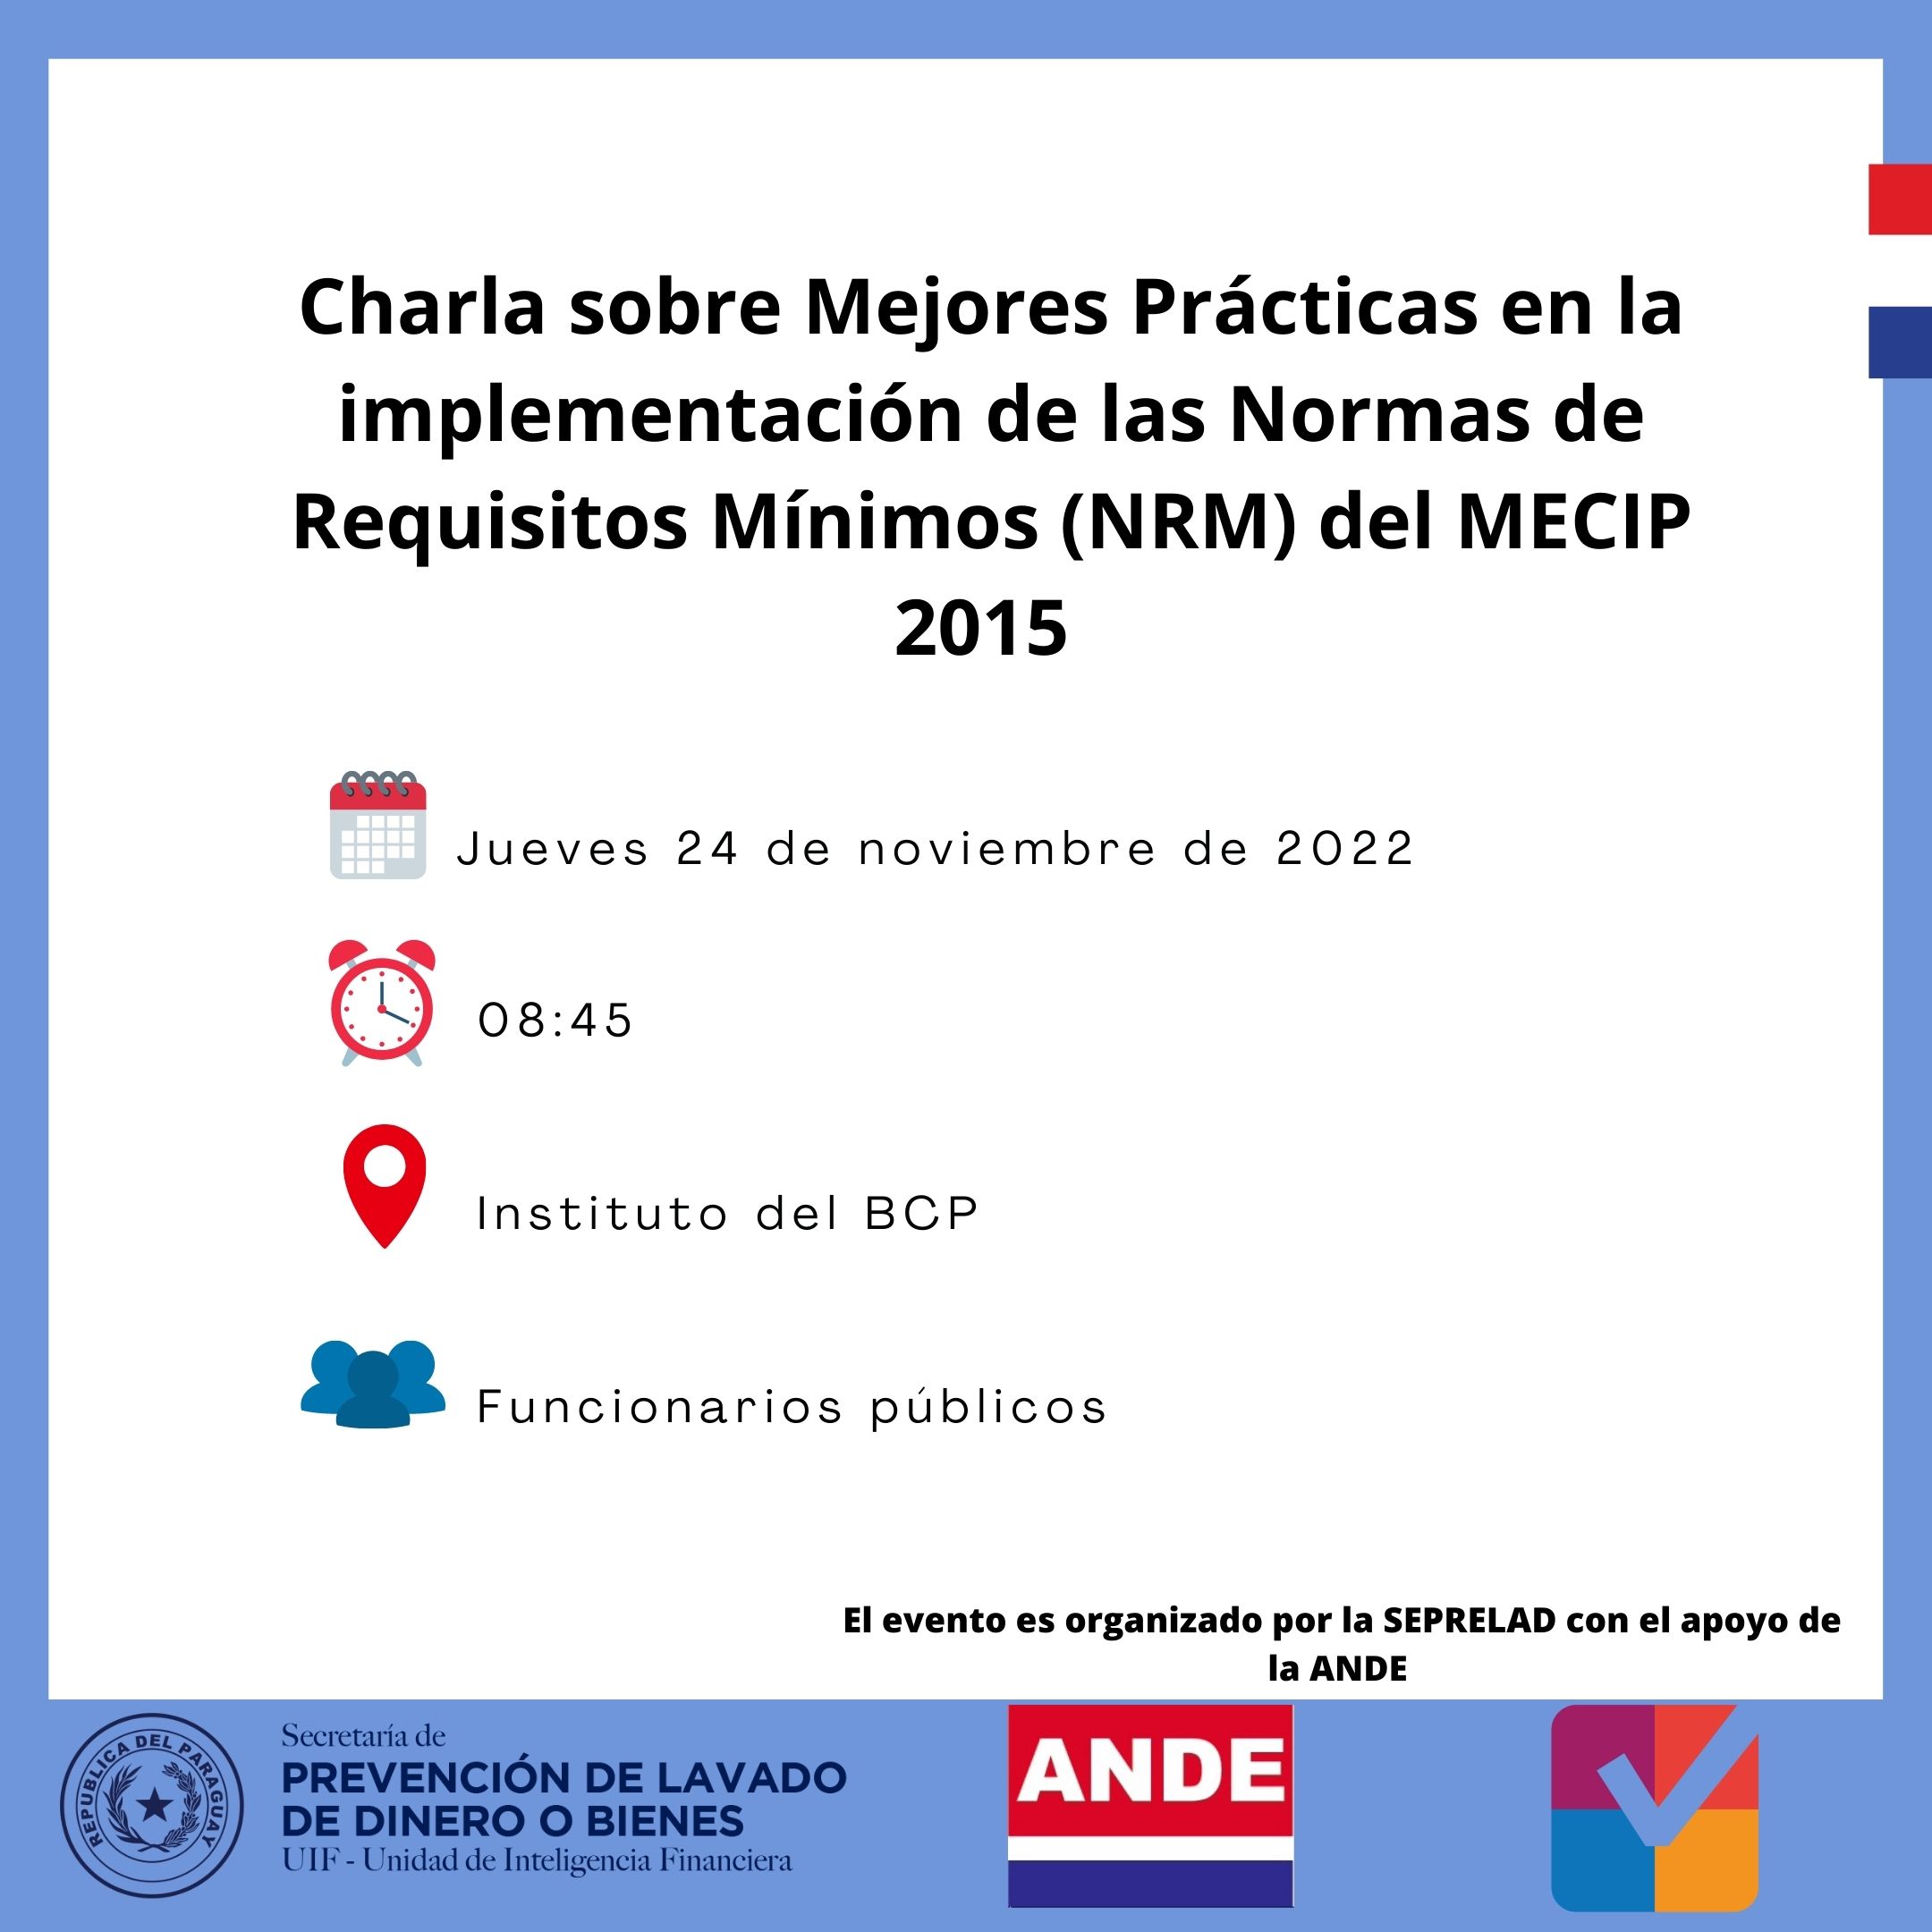 Charla sobre Mejores Prácticas en la implementación de la Norma de Requisitos Mínimos del MECIP 2015